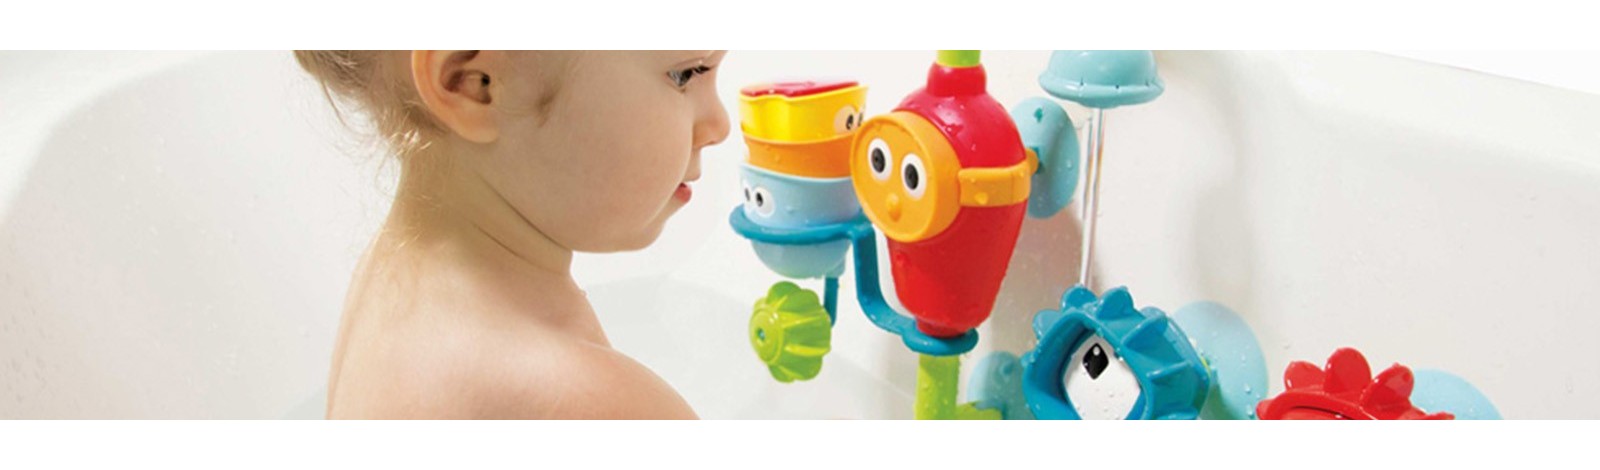 Juguetes de agua para bañera | Juguetes para el baño del bebé